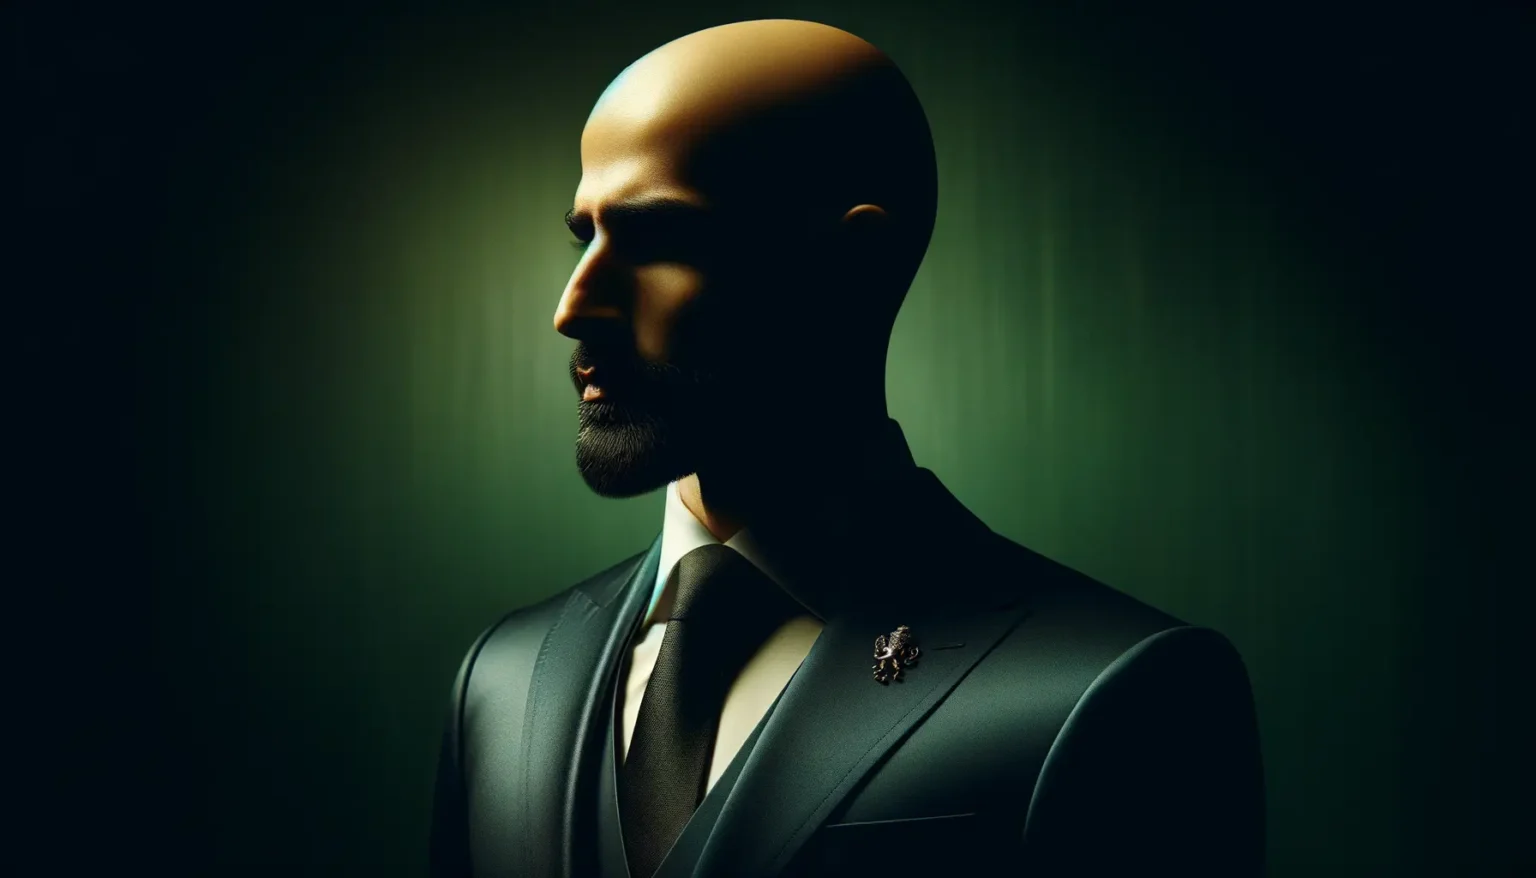 Ein Porträt eines stilvollen, kahlköpfigen Mannes im Profil, der einen dunkelgrünen Anzug mit Krawatte und ein auffälliges Anstecknadel trägt. Das Bild ist dramatisch beleuchtet mit Schattenspielen, was eine geheimnisvolle Stimmung erzeugt, und der Hintergrund zeigt einen smooth verlaufenden grüntönigen Verlauf.